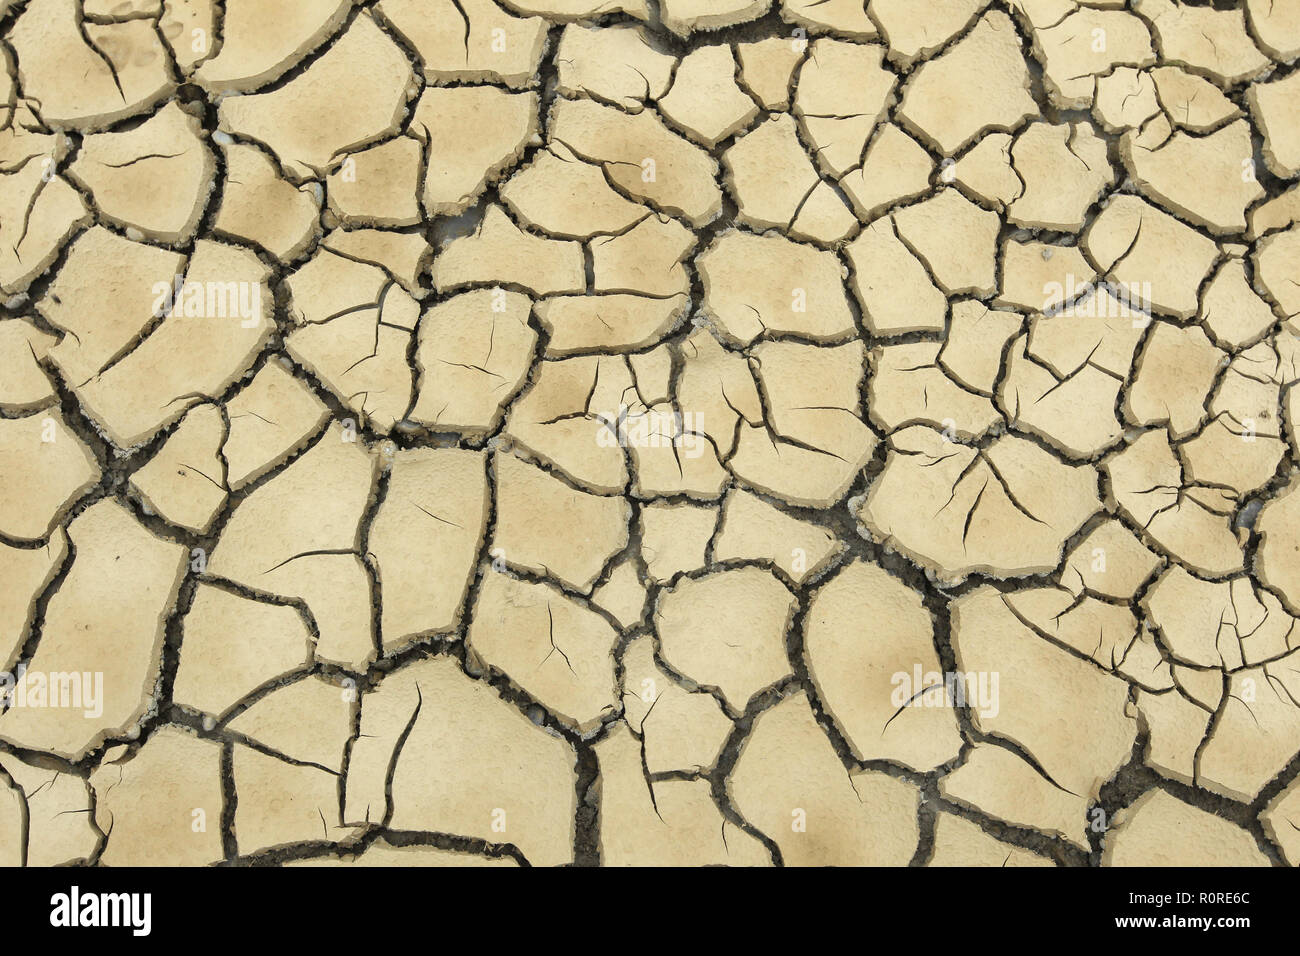 Le sol argileux a éclaté en raison de la sécheresse prolongée, image de fond, Allemagne Banque D'Images